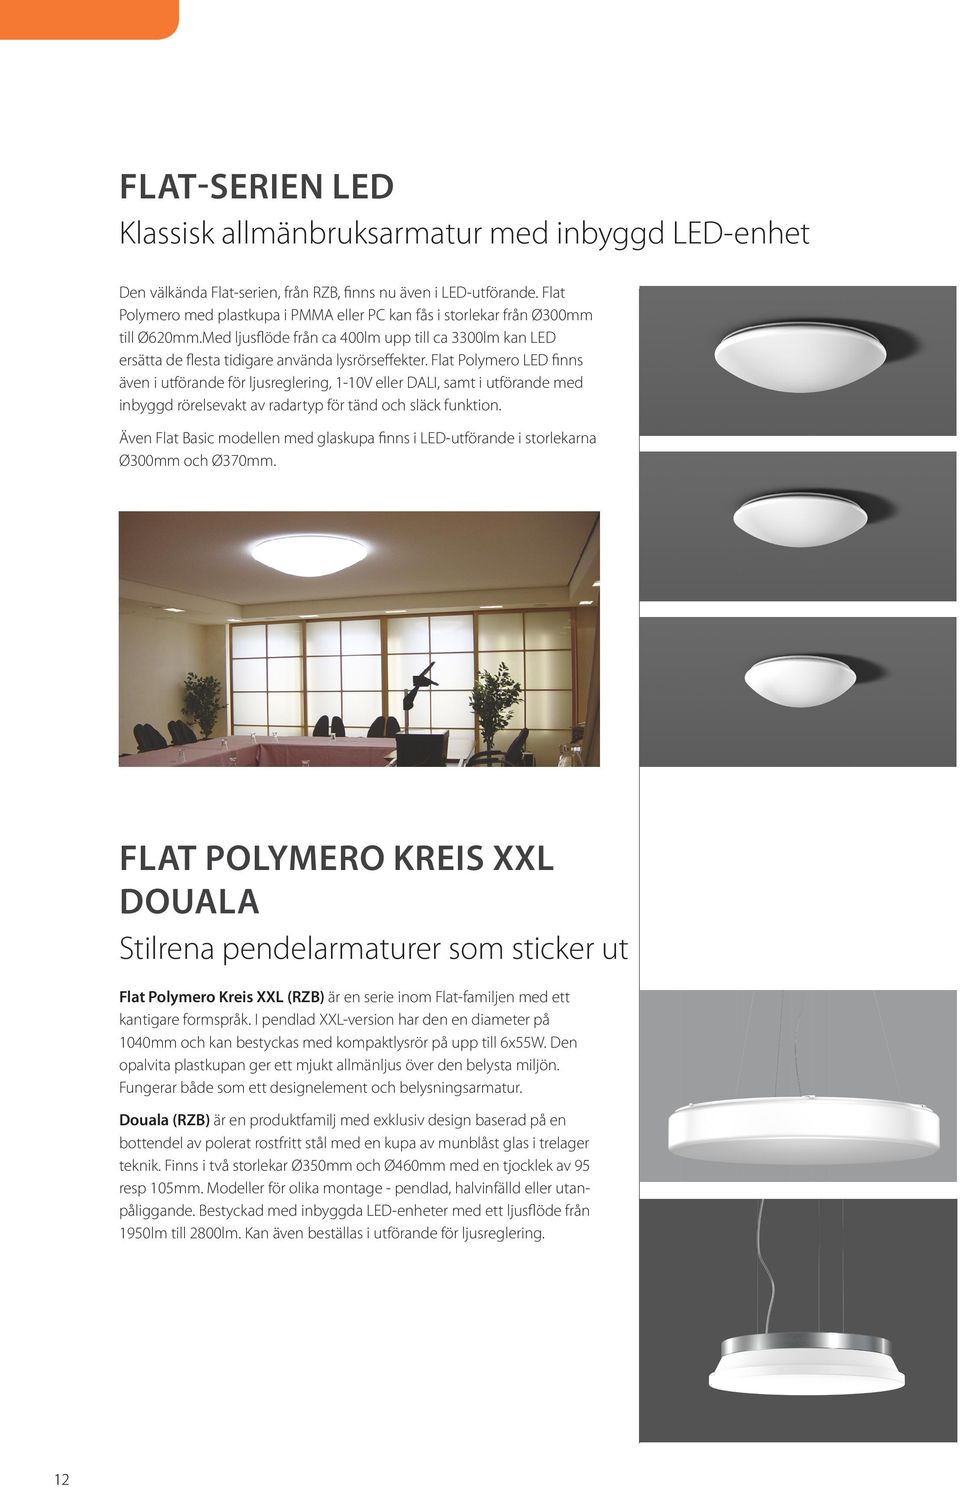 Flat Polymero LED finns även i utförande för ljusreglering, 1-10V eller DALI, samt i utförande med inbyggd rörelsevakt av radartyp för tänd och släck funktion.